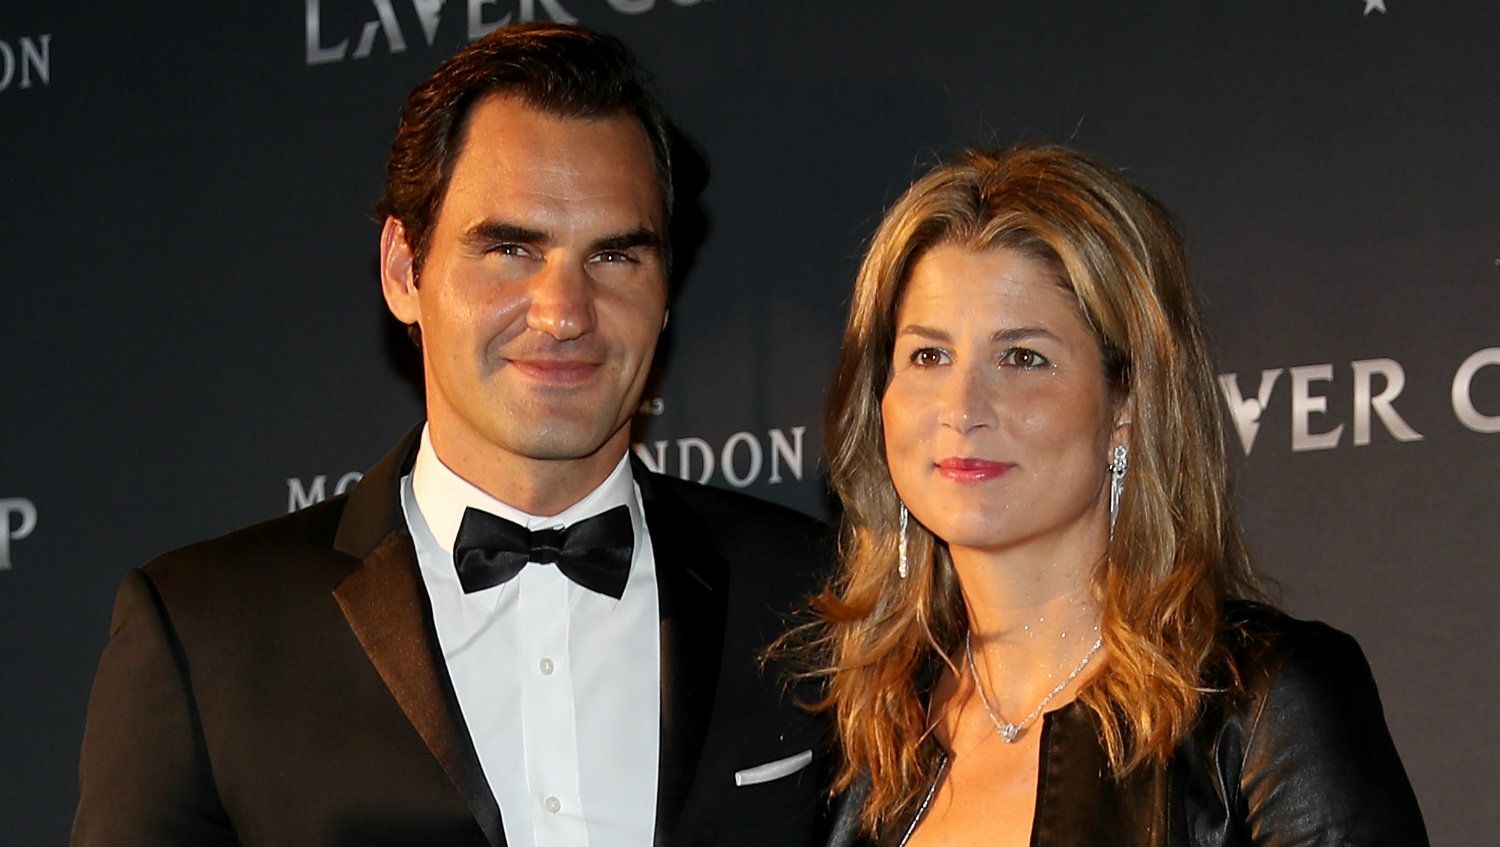 A tenisz Mona Lisája nélkül Federer nem jutott volna ilyen magasra